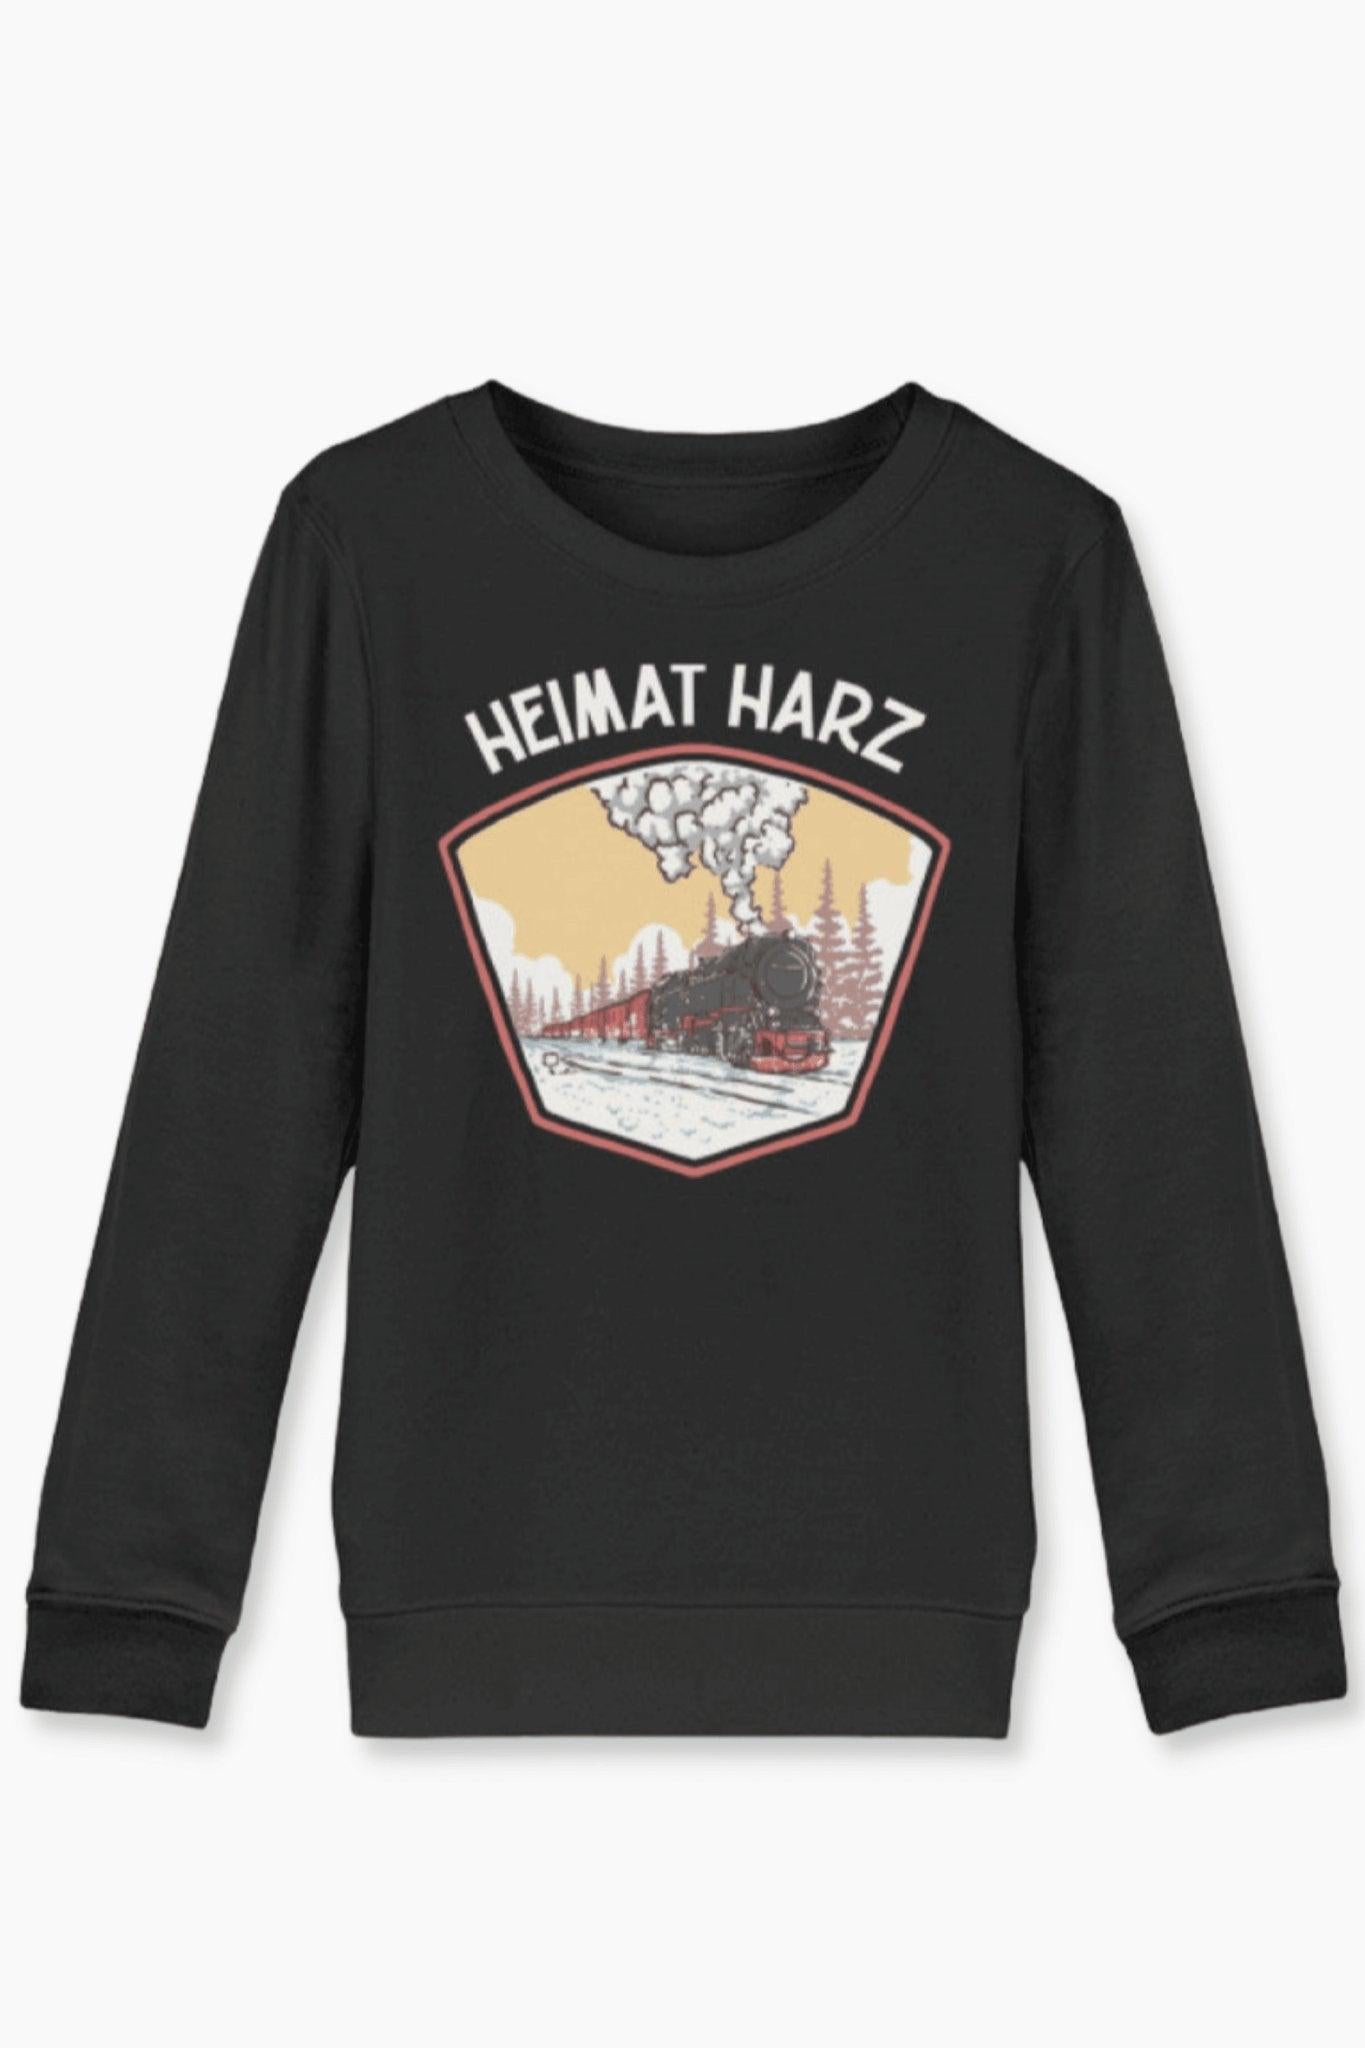 Kinder Sweatshirt Heimat Harz - Heimat Harz Shop